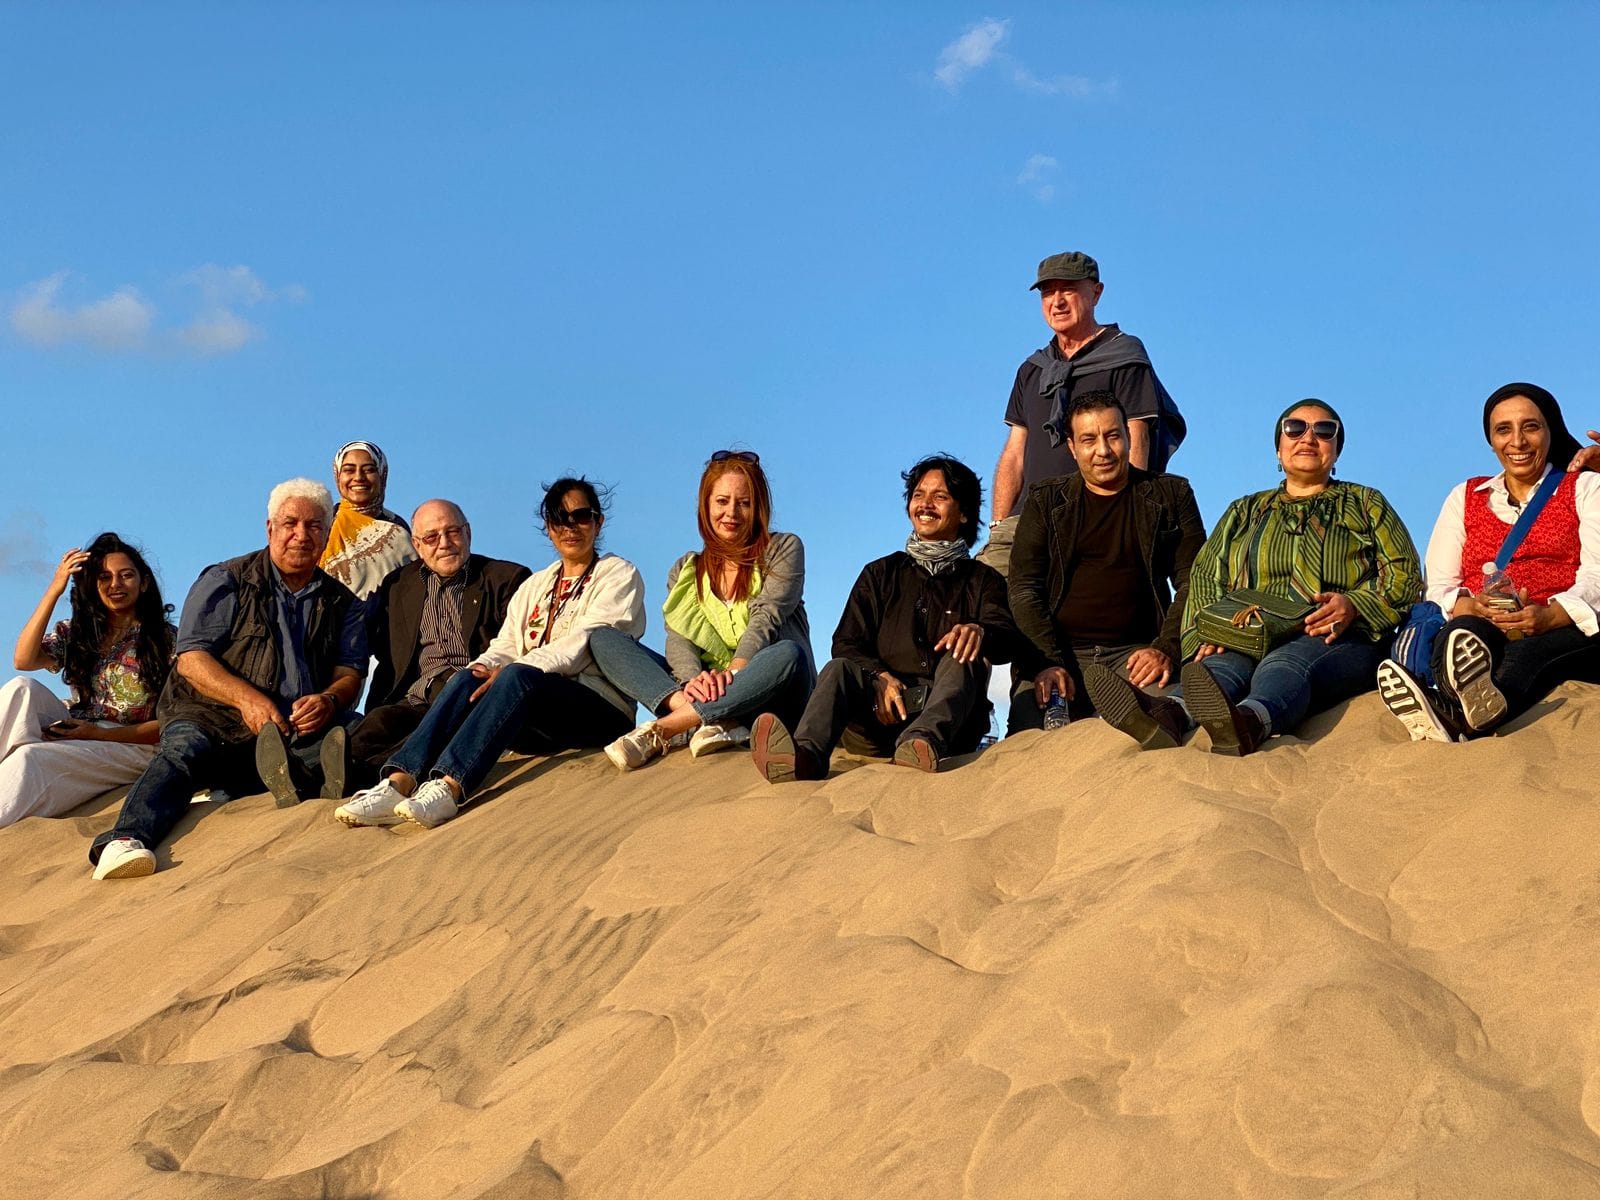 الفانون المشاركون في الملتقى سعداء  بمناظر الرمال وقت الغروب